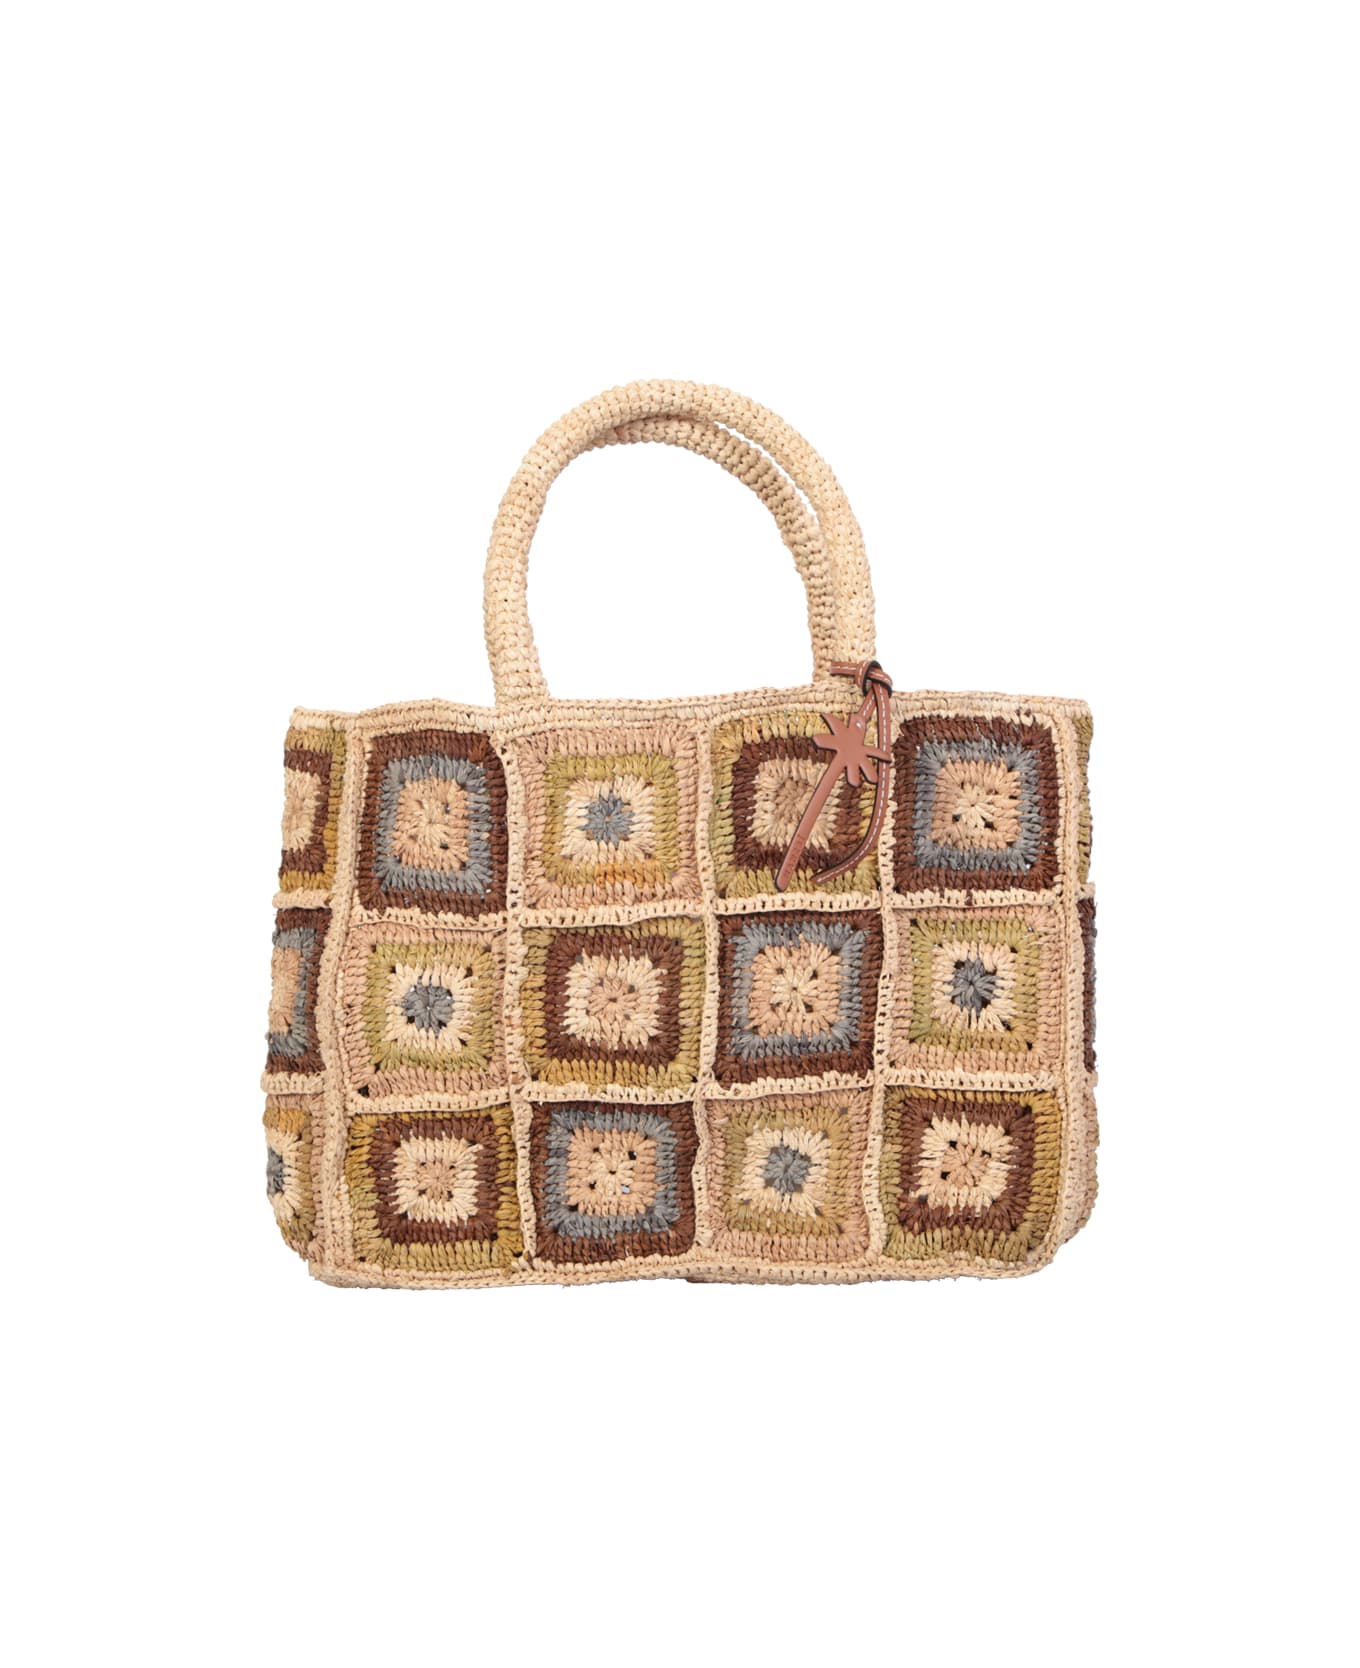 Manebi Sunset Small Crochet Multicolor Bag By Manebi - Beige